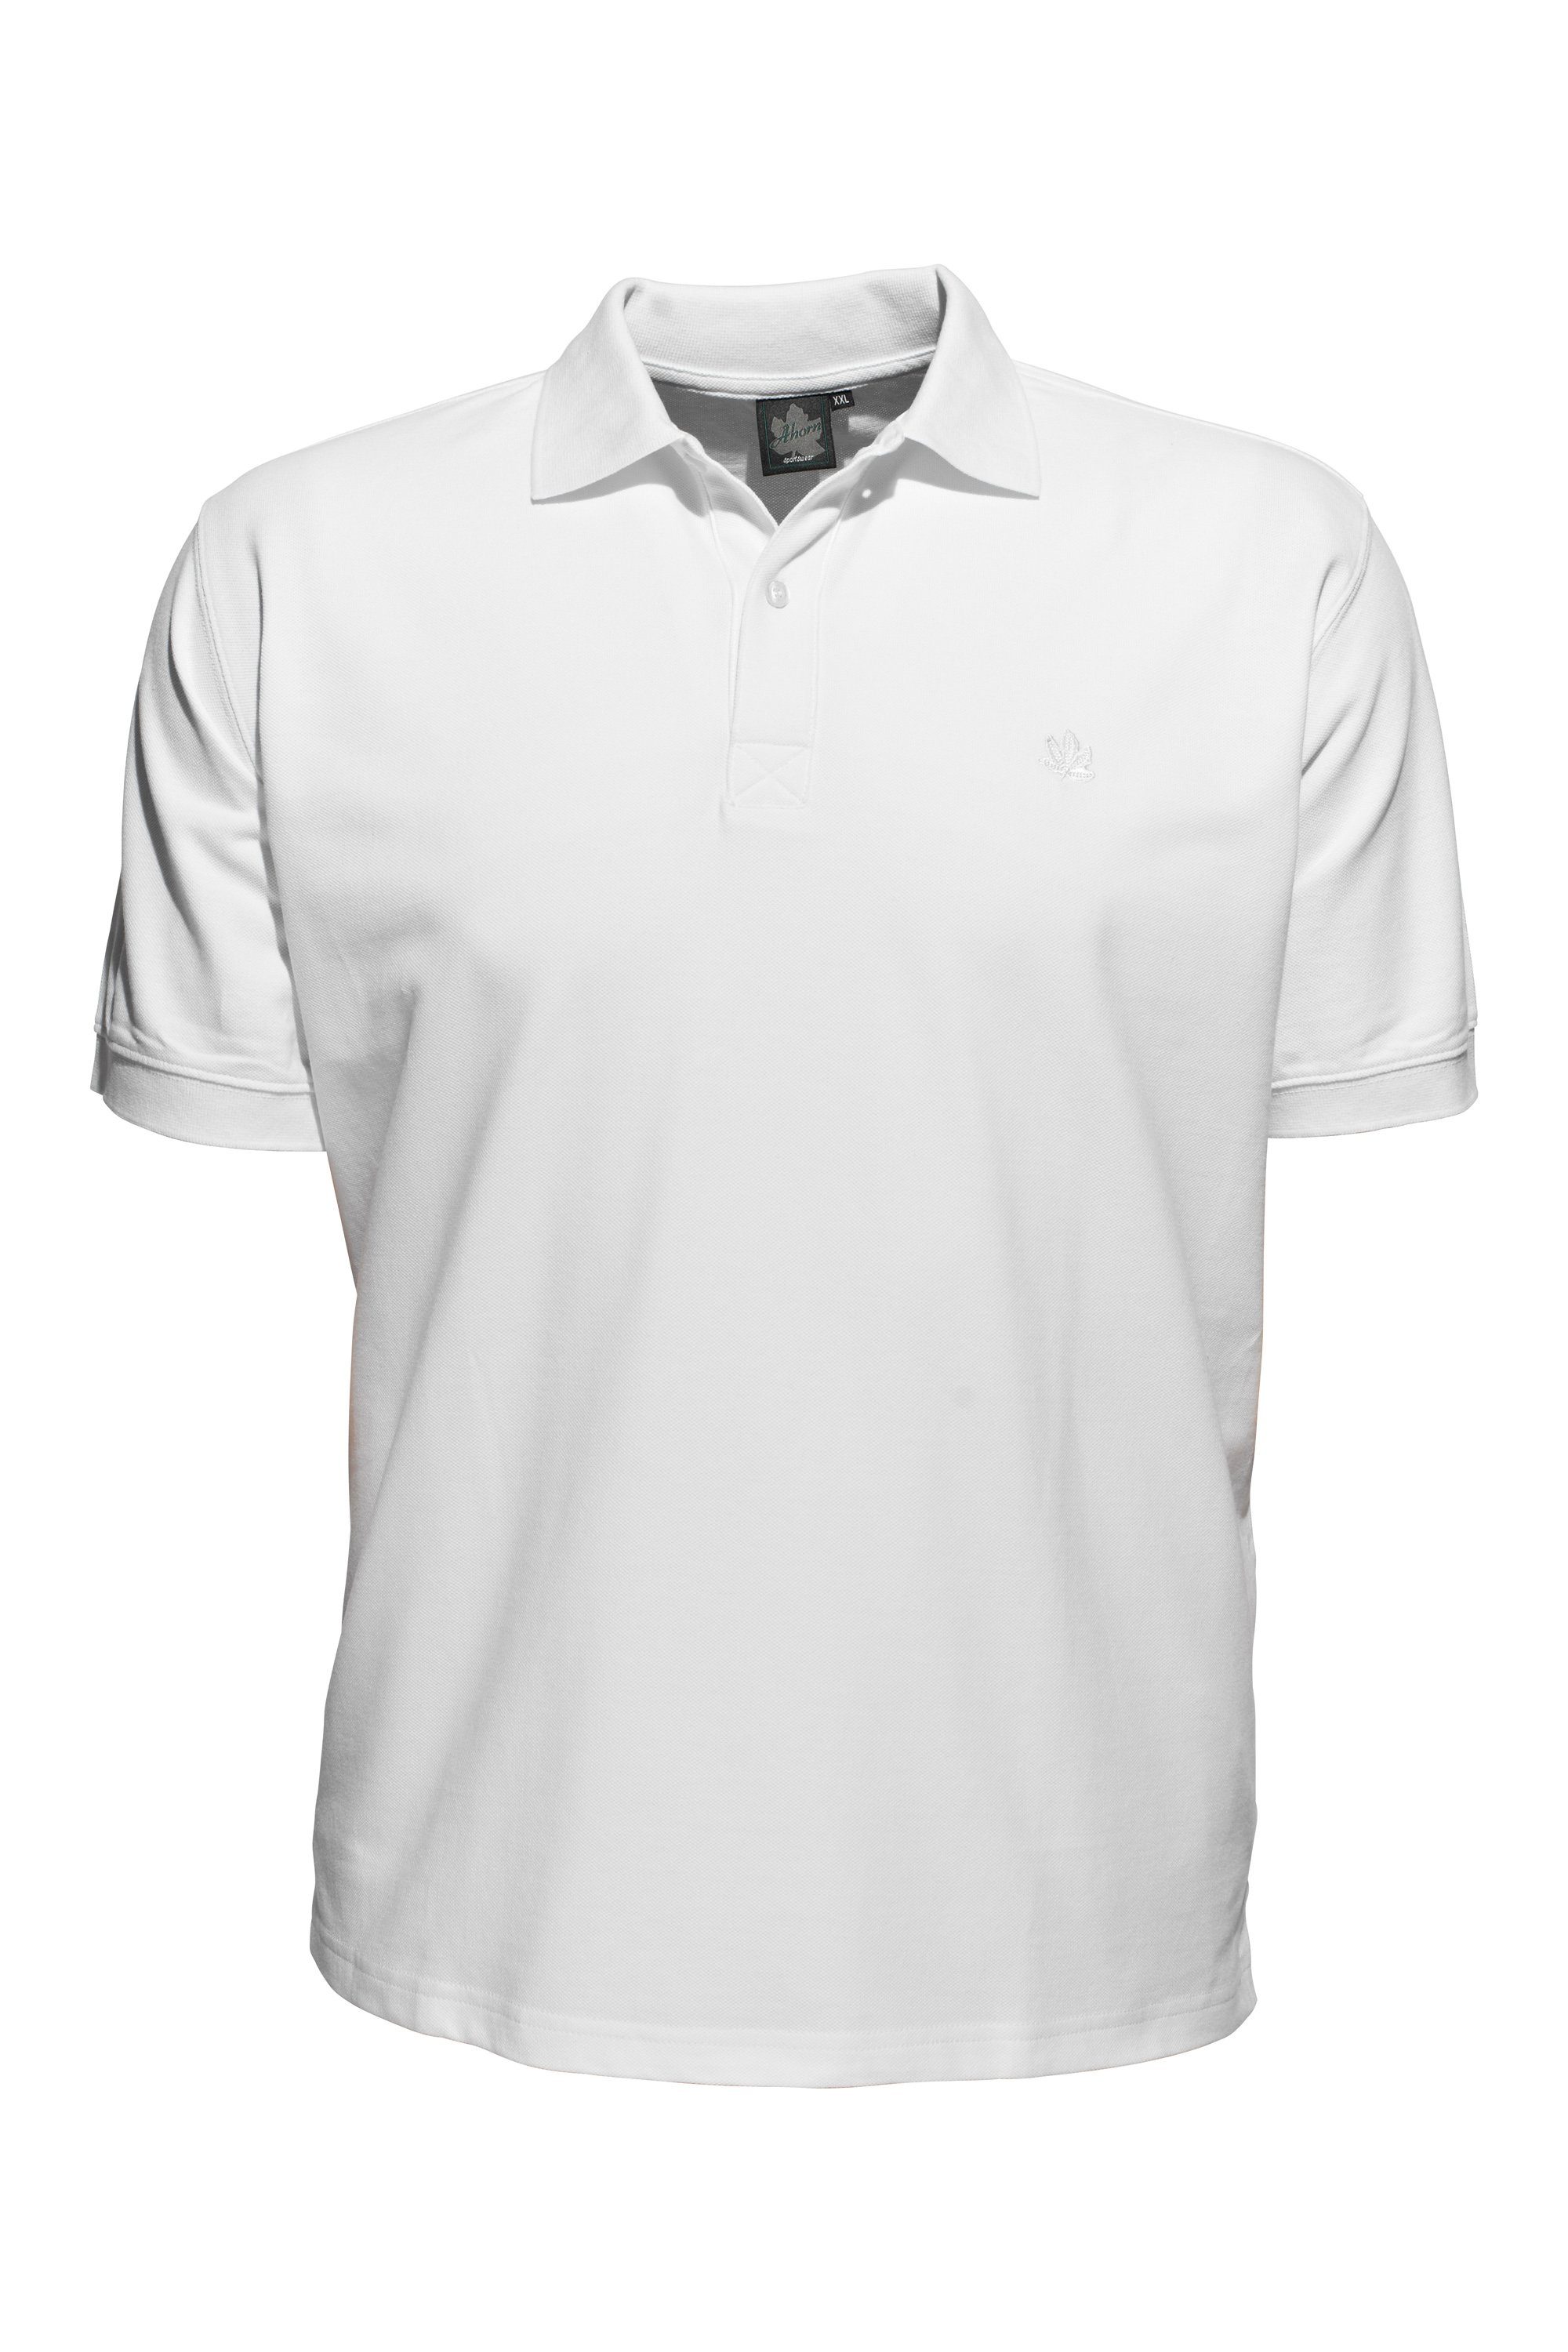 AHORN SPORTSWEAR Poloshirt in klassischem Design weiß | Poloshirts